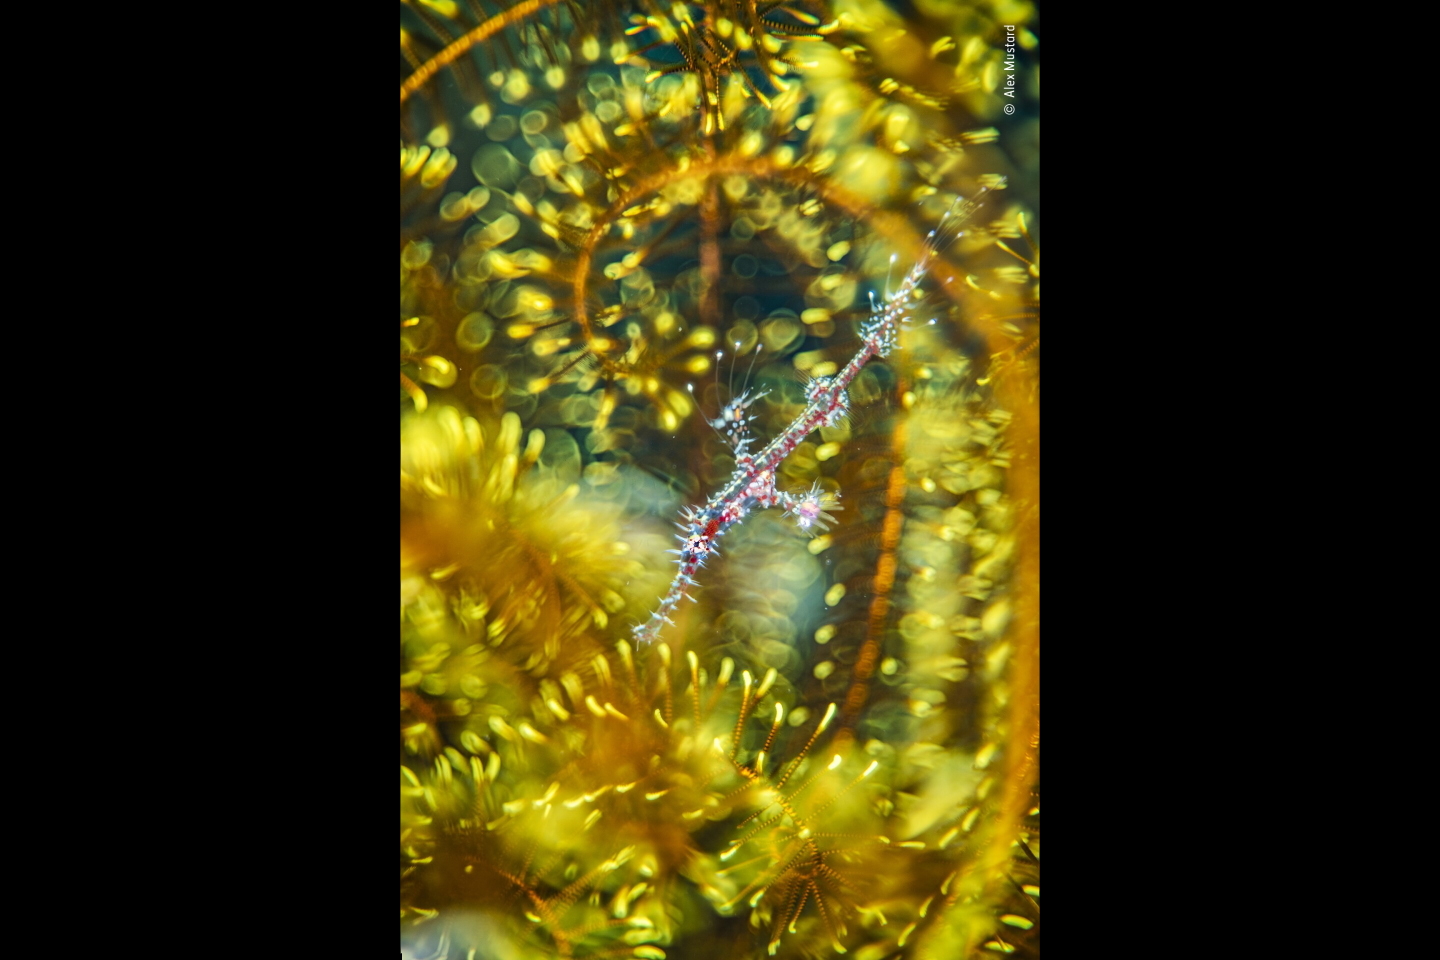 «Ослепление блеском». Победитель в категории "Артистизм природы". Молодь рыб-призраков из рода Solenostomus на фоне морской лилии. Фото: © Alex Mustard, Wildlife Photographer of the Year